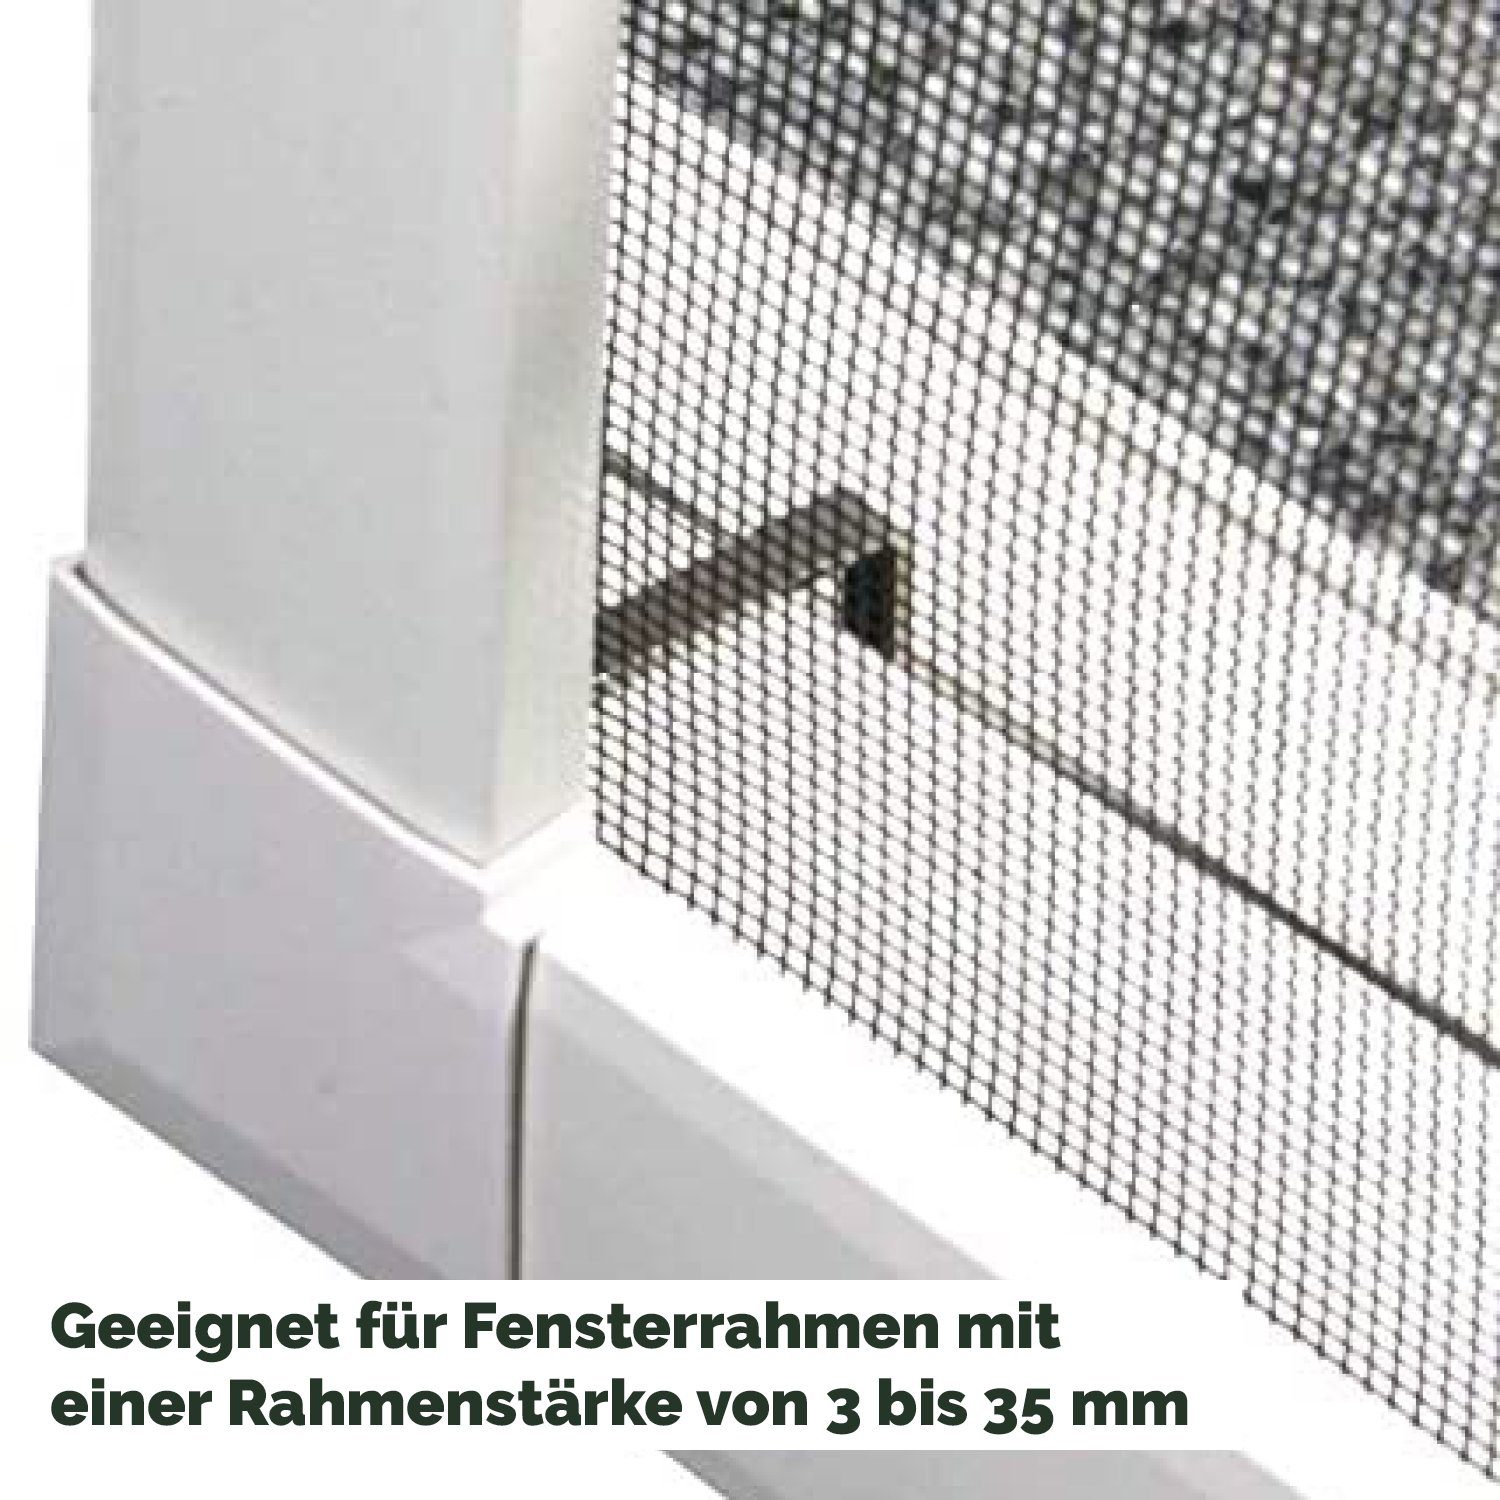 Nematek® premium für Spannrahmen Insektenschutz System Fenster Insektenschutz-Fensterrahmen Nematek Alu Weiß